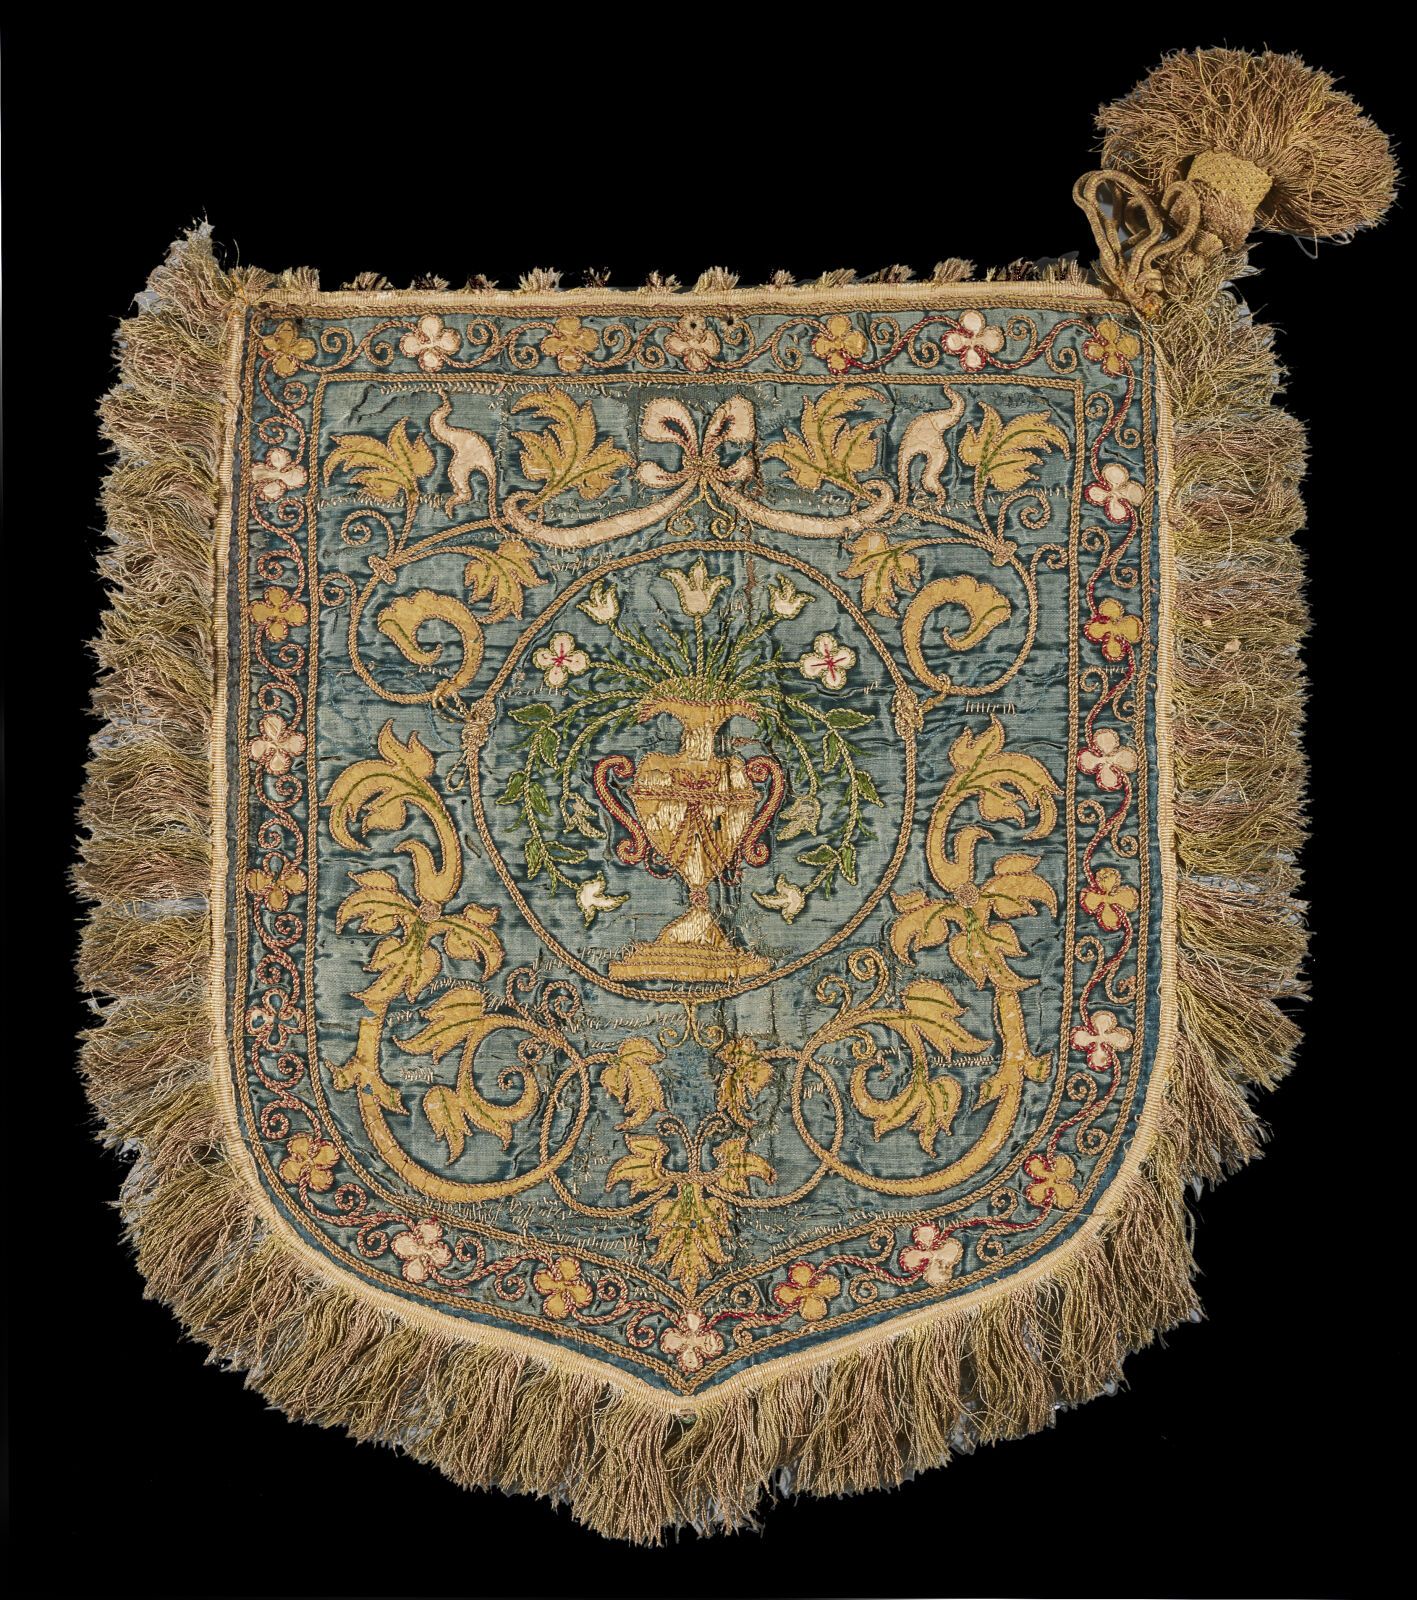 Null 伴侣，西班牙，16 世纪
蓝色天鹅绒上绣有贴花和多色丝绸花瓶图案，有流苏（天鹅绒绒毛磨损）。
51 x 42 厘米